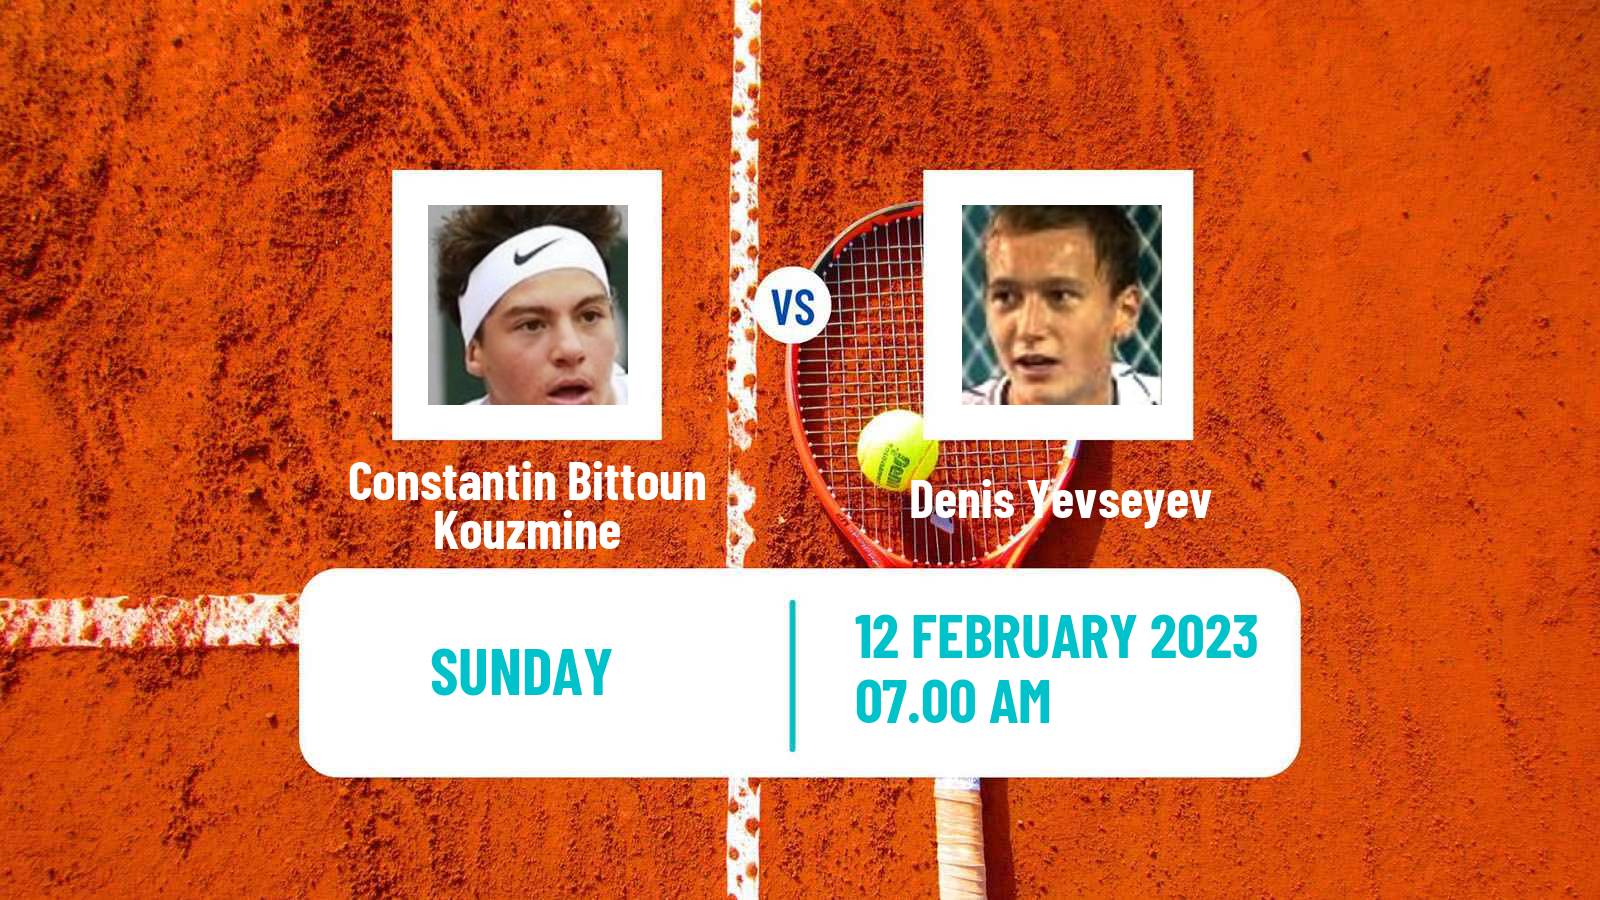 Tennis ATP Challenger Constantin Bittoun Kouzmine - Denis Yevseyev